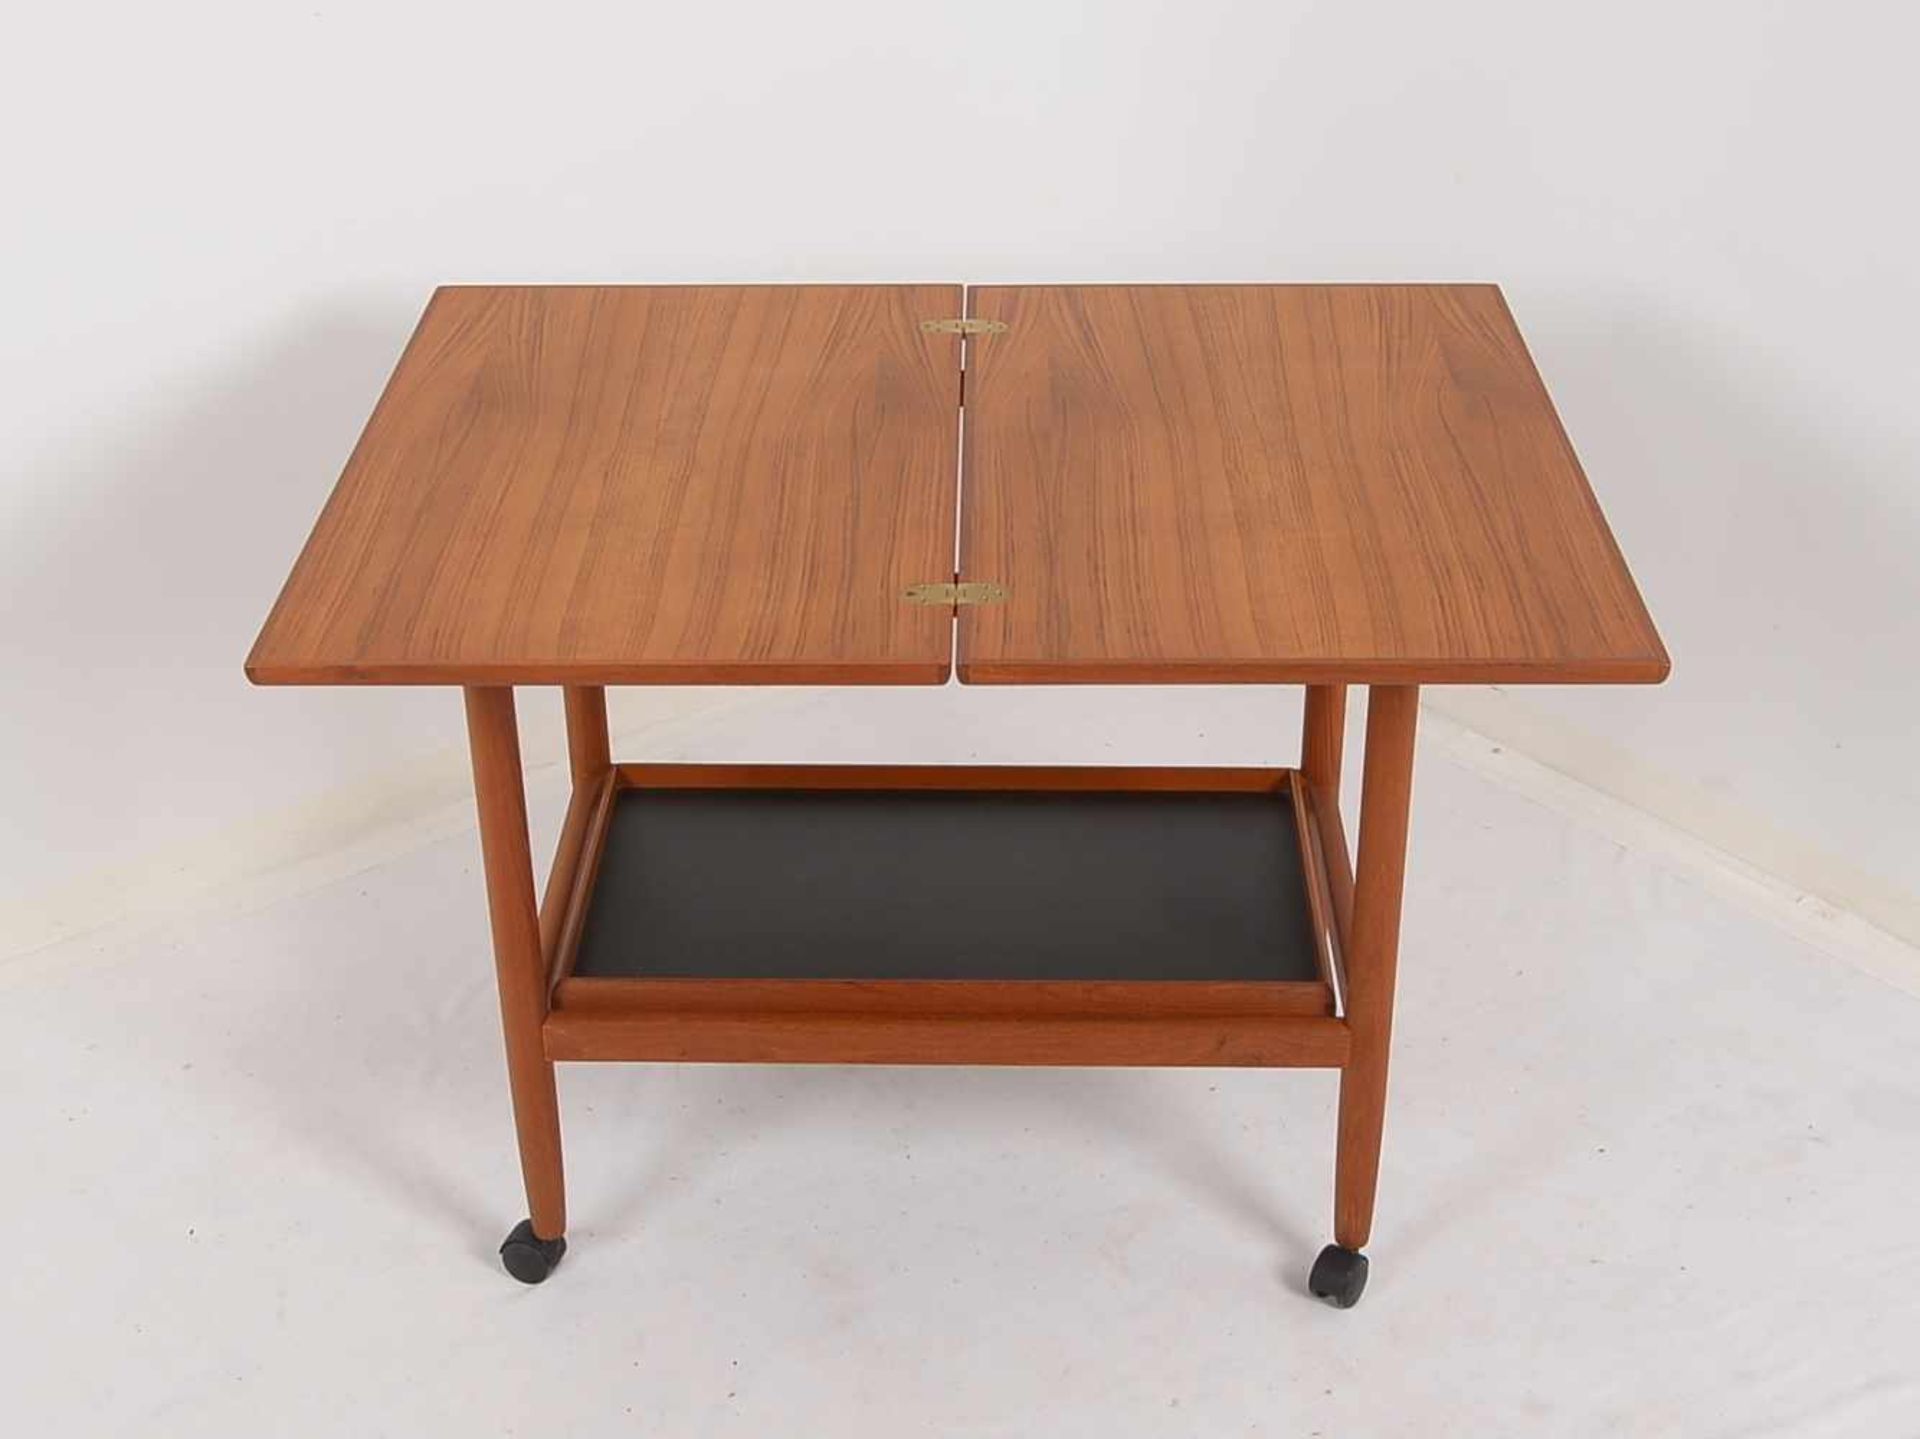 Spieltisch, Dänemark, Teak, Deckplatte ausklappbar/drehbar, untere Ebene als Tablett - Bild 2 aus 3